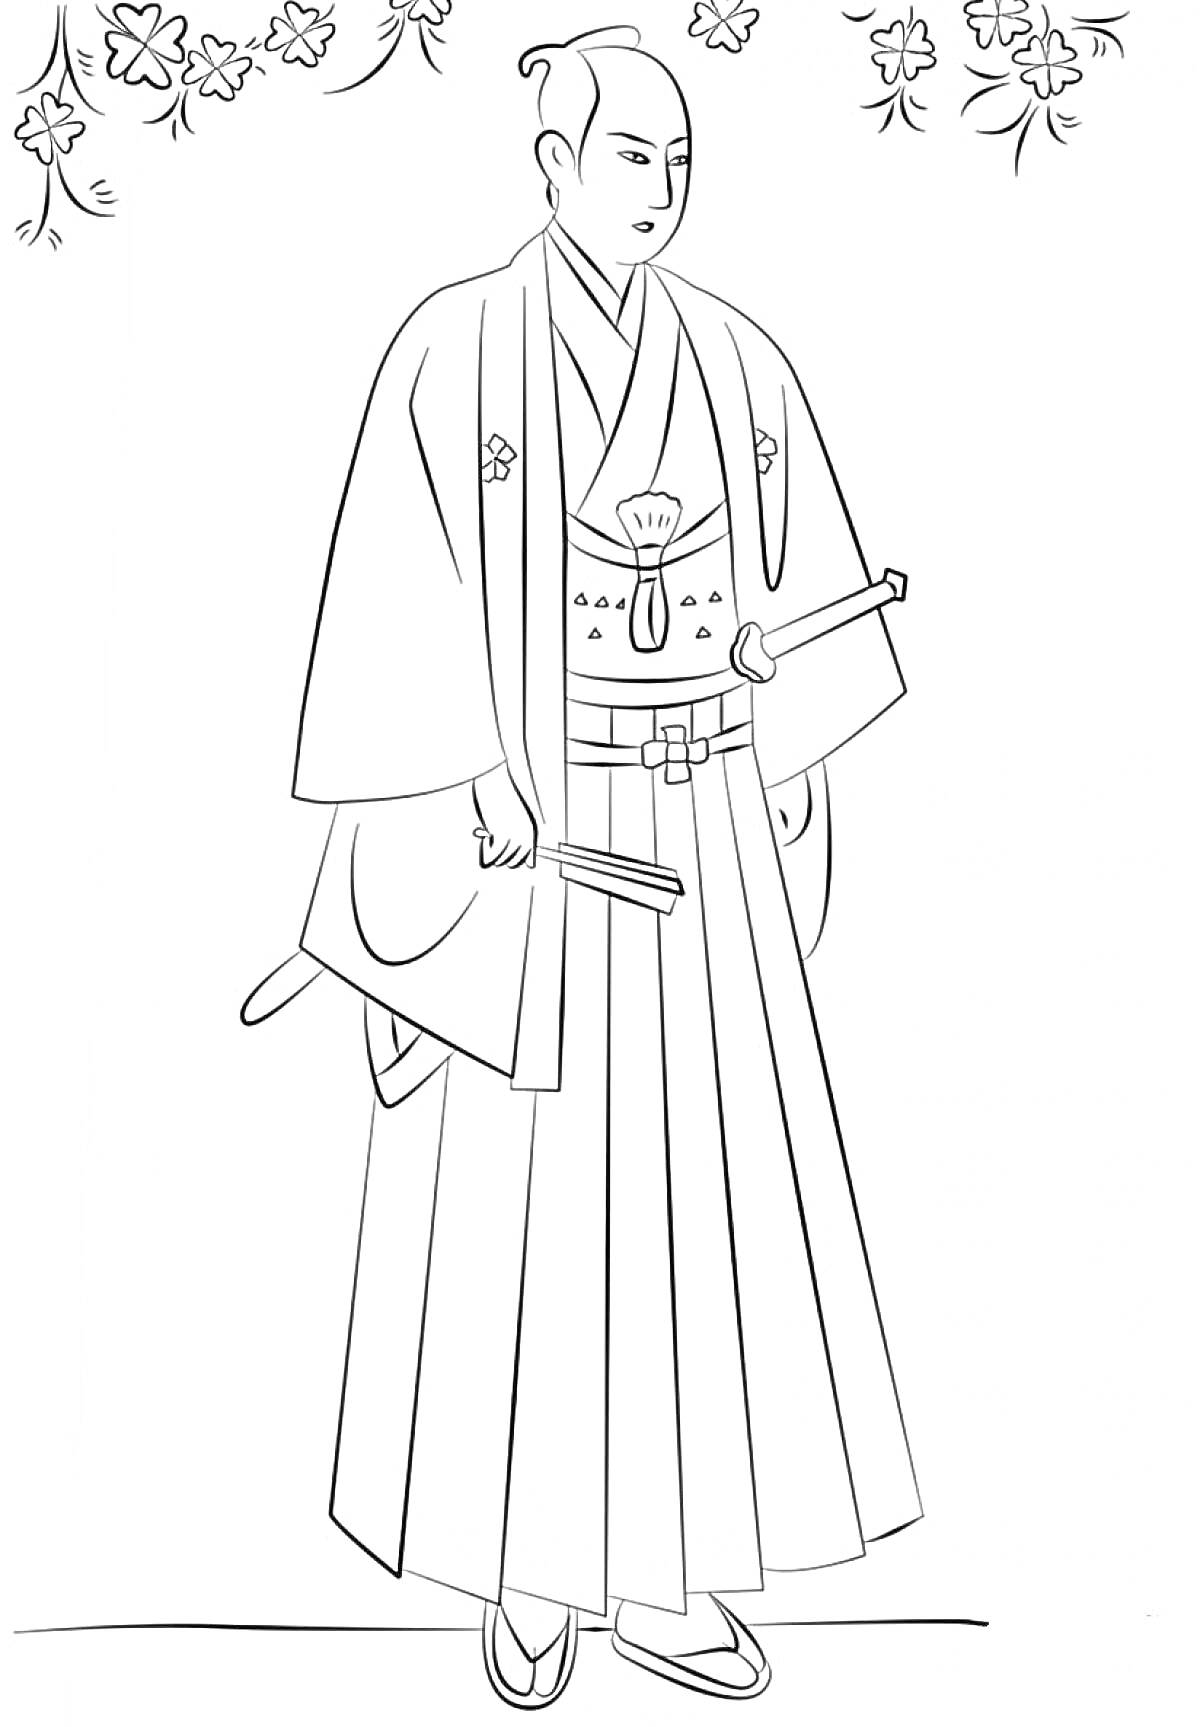 Самурай в традиционной японской одежде с мечами на фоне сакуры